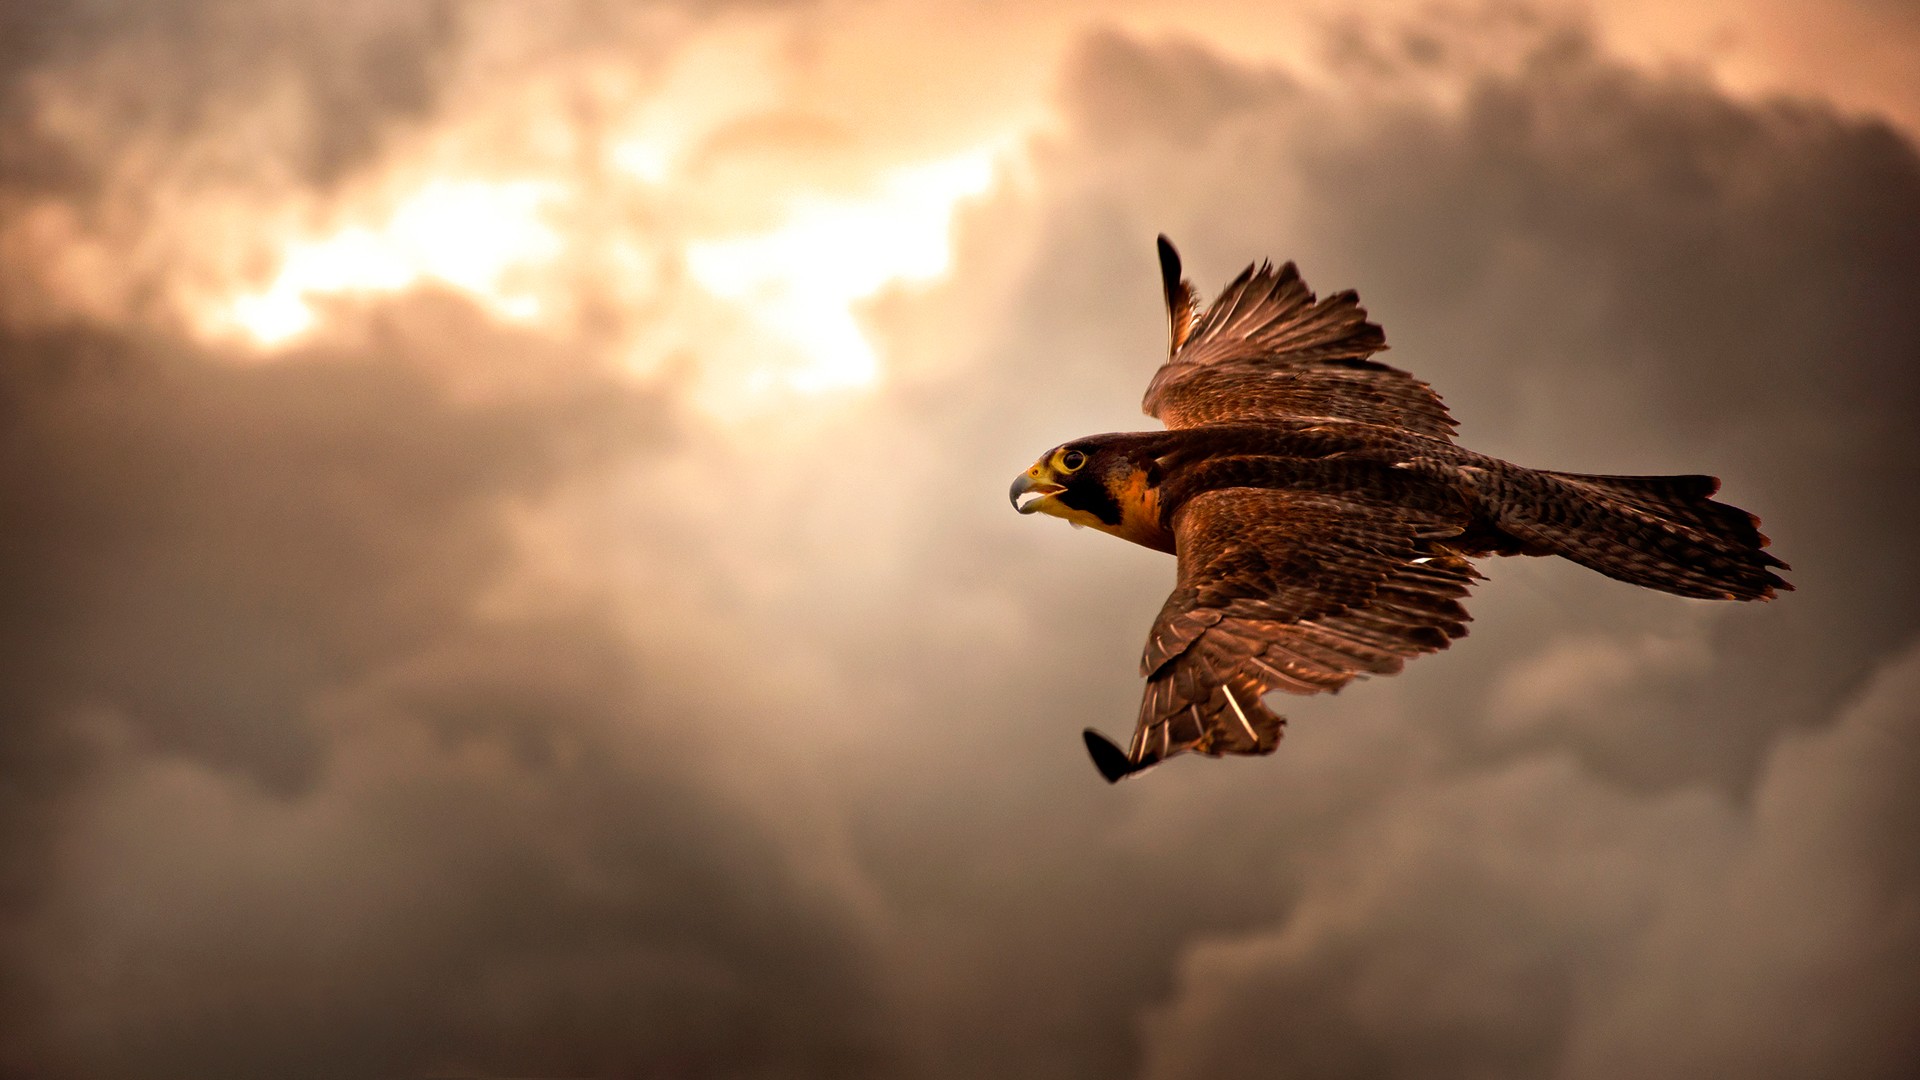 Brown Eagle In Flight Hd Wallpaper - Bird Of Prey Background - HD Wallpaper 